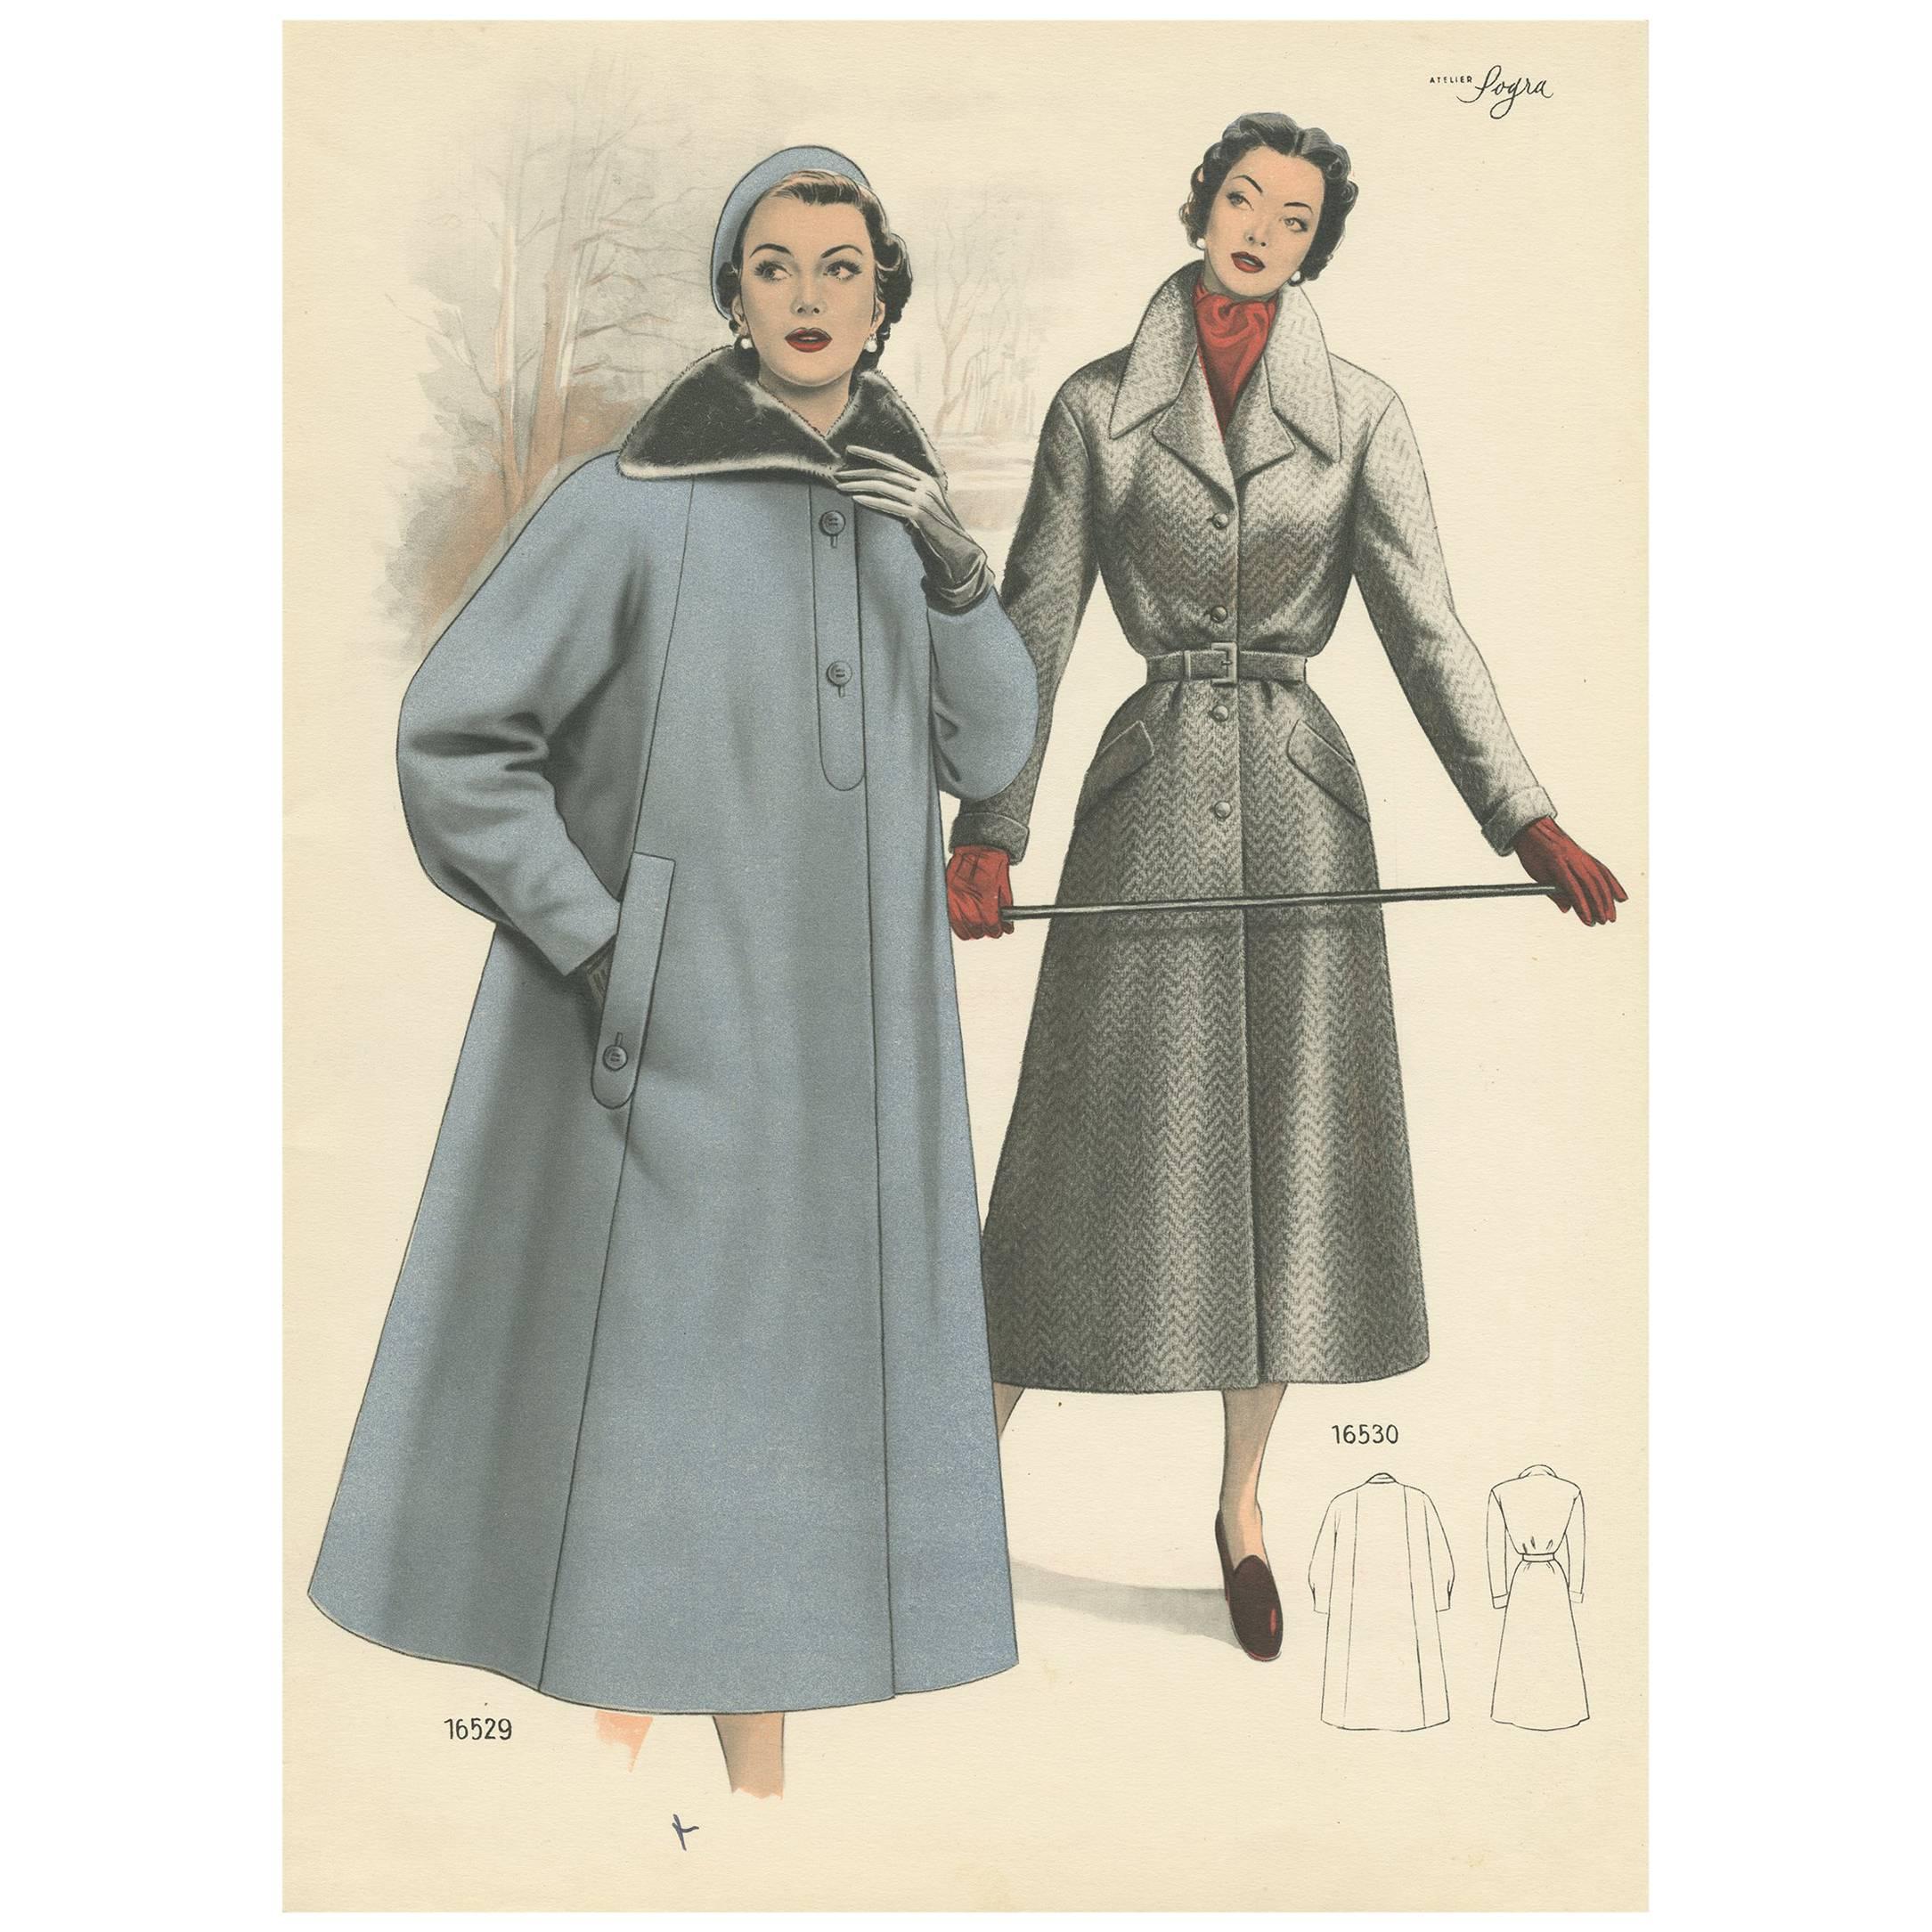 Antique Fashion Print 'Pl. 16529' published in Le Tailleur Moderne, 1954